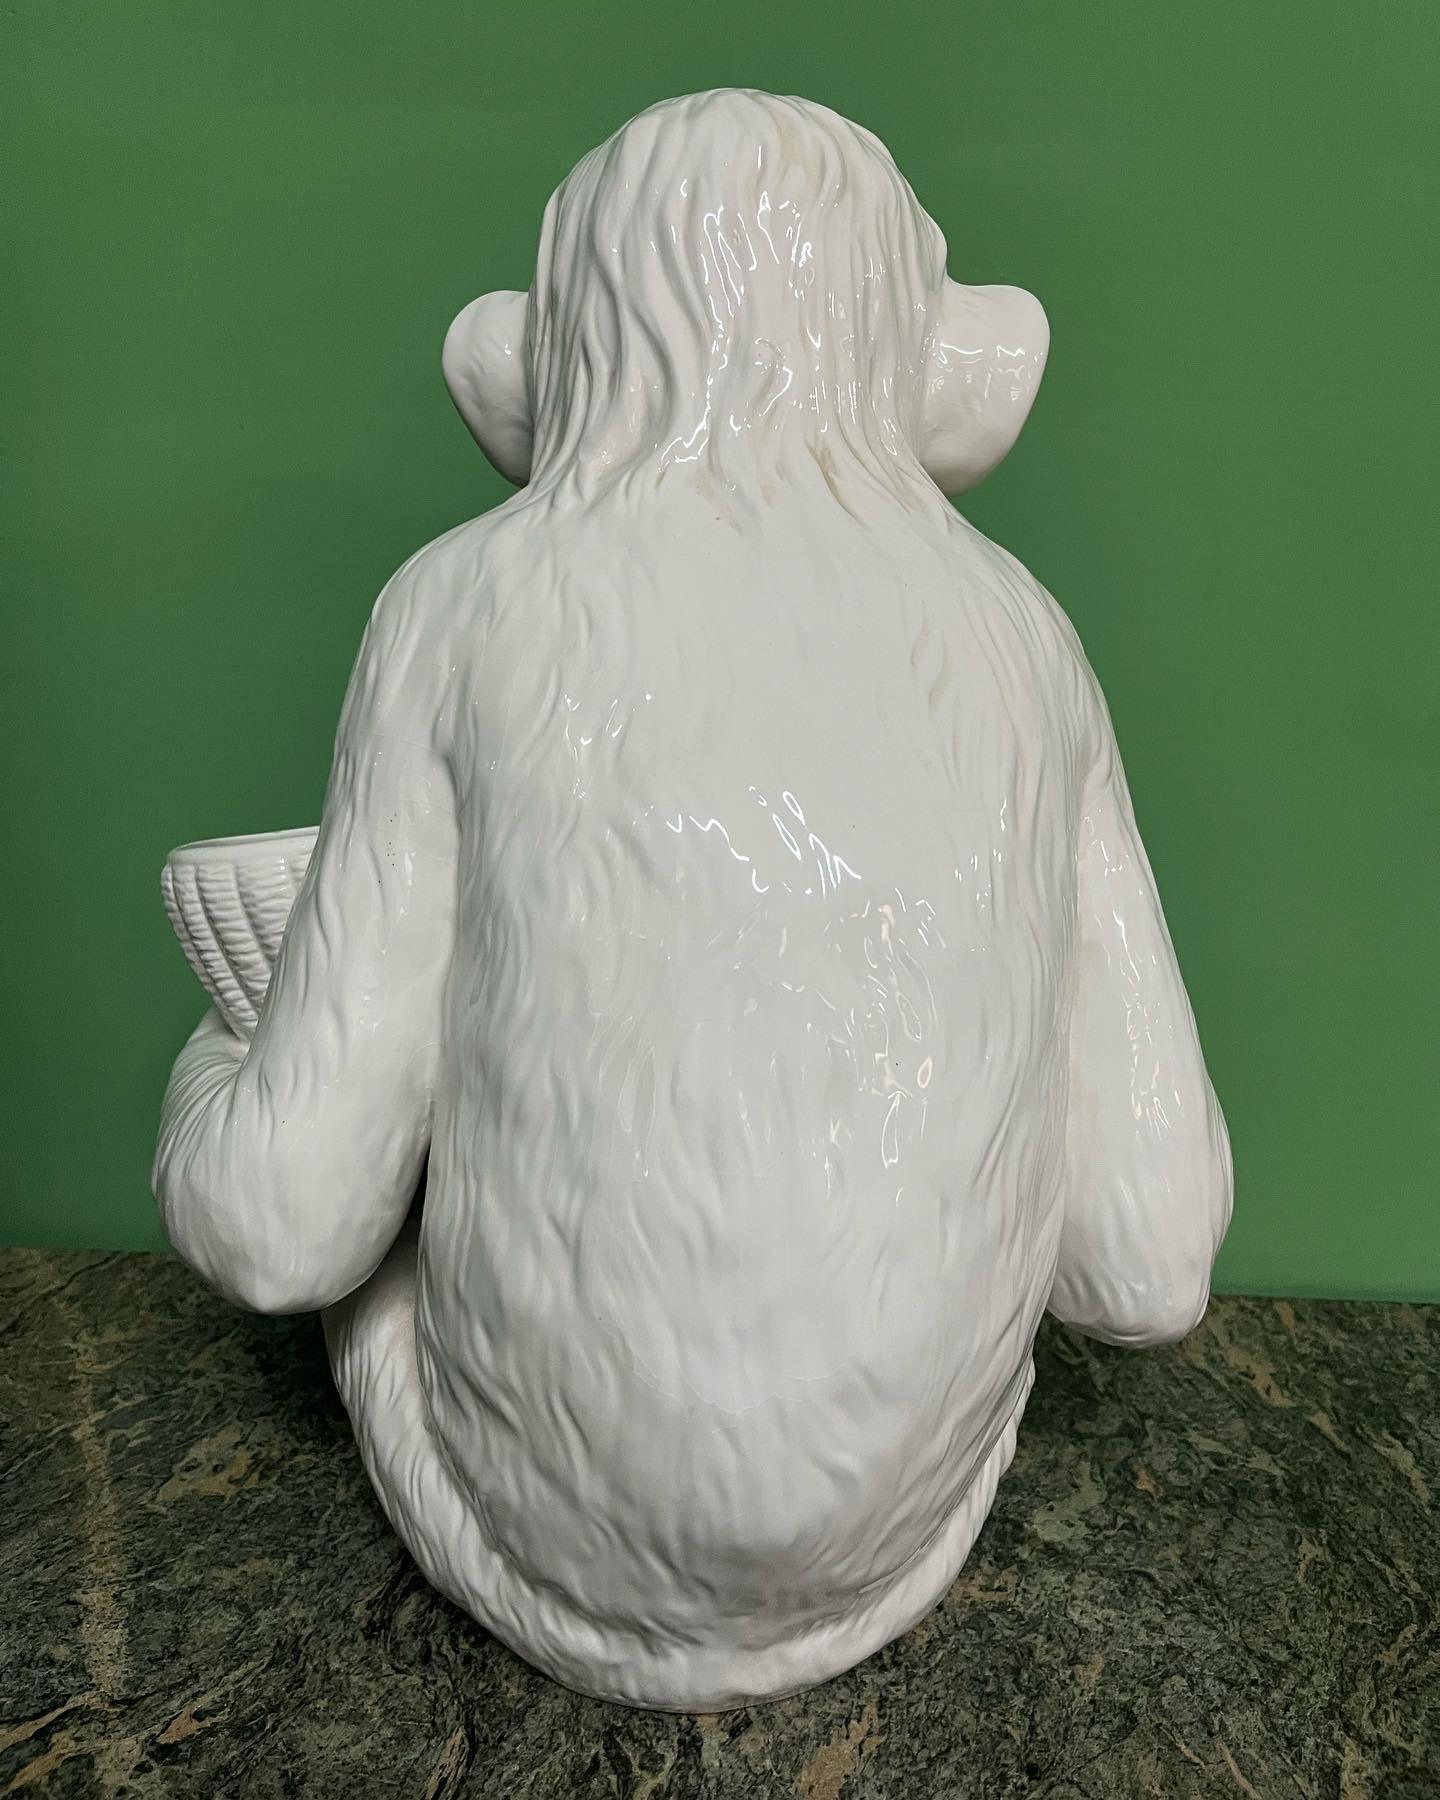 Affen-Keramik, hergestellt in Italien, 1960er Jahre 

Perfekter Zustand 

Weiße Keramik

Maße cm 50 x cm 40 x cm 30